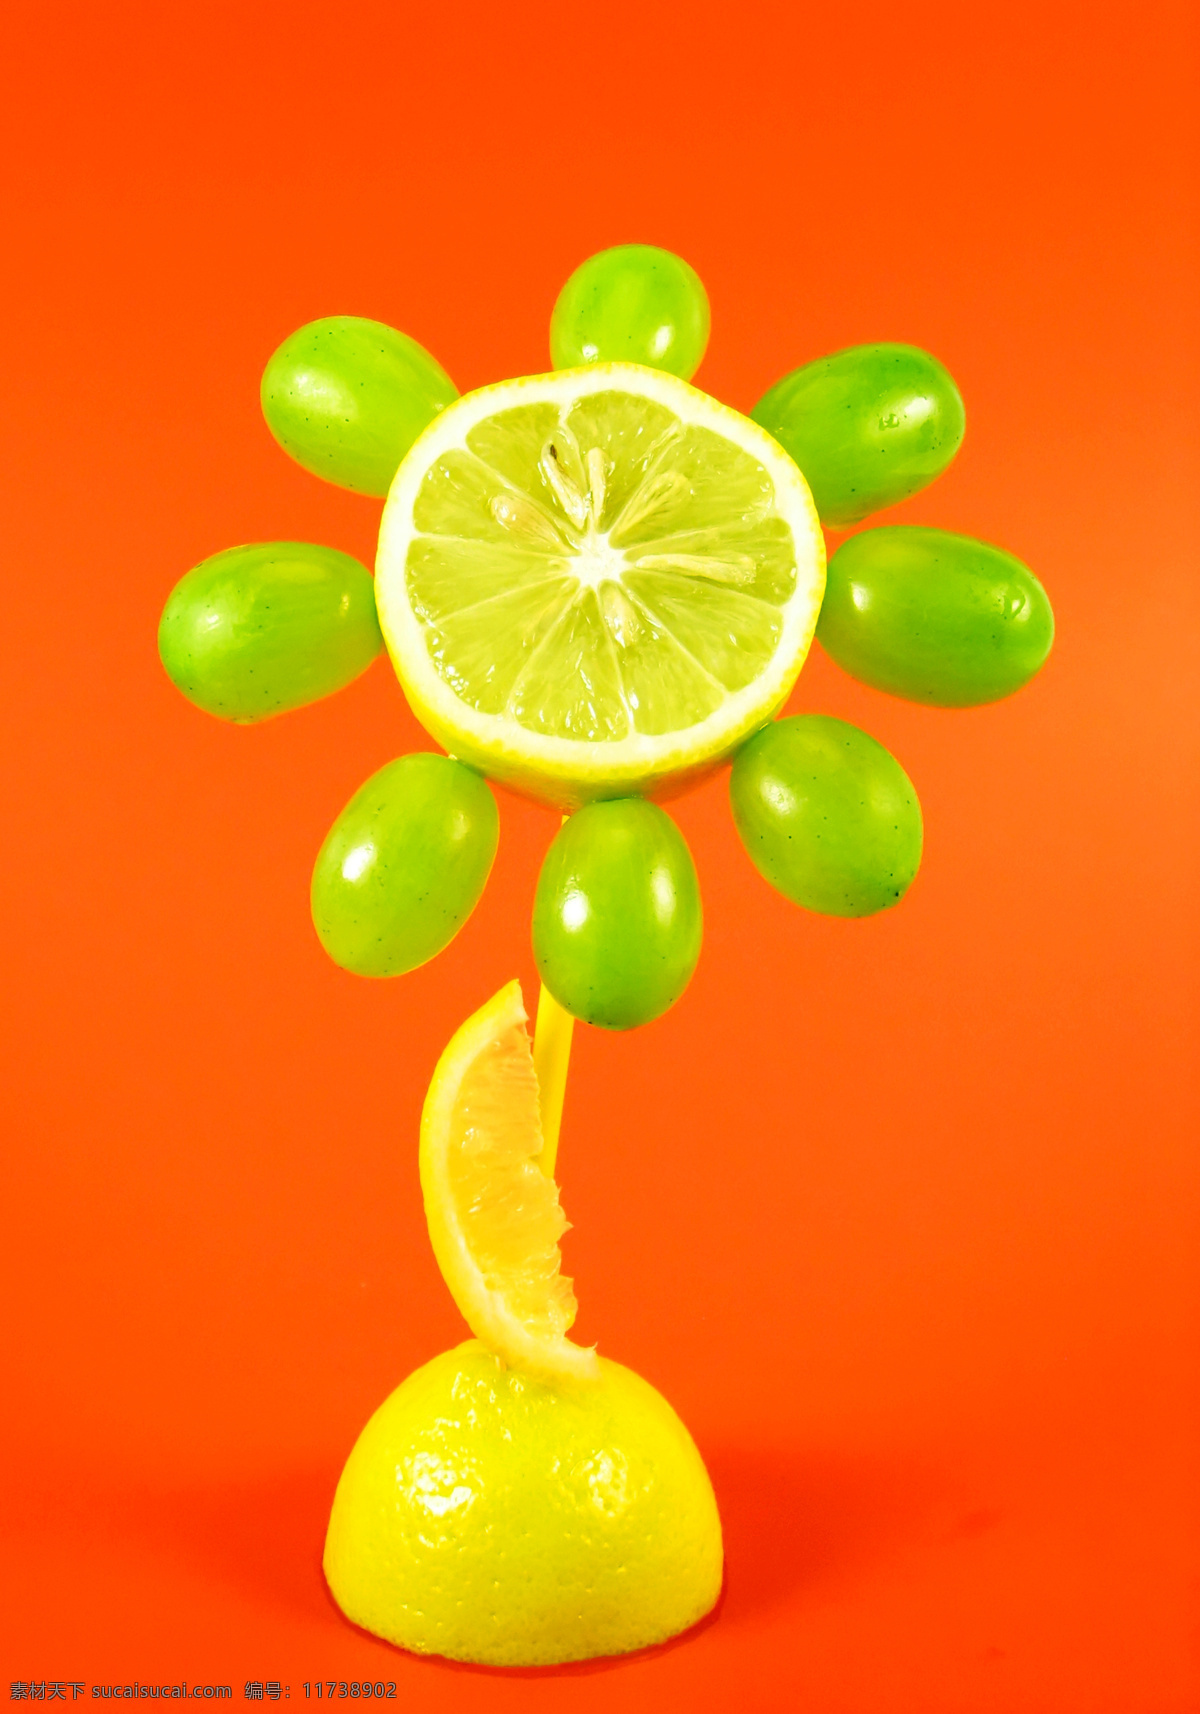 橙子 创意 广告 桔子 橘子 柠檬 葡萄 水果 摄影图片 广告摄影 生物世界